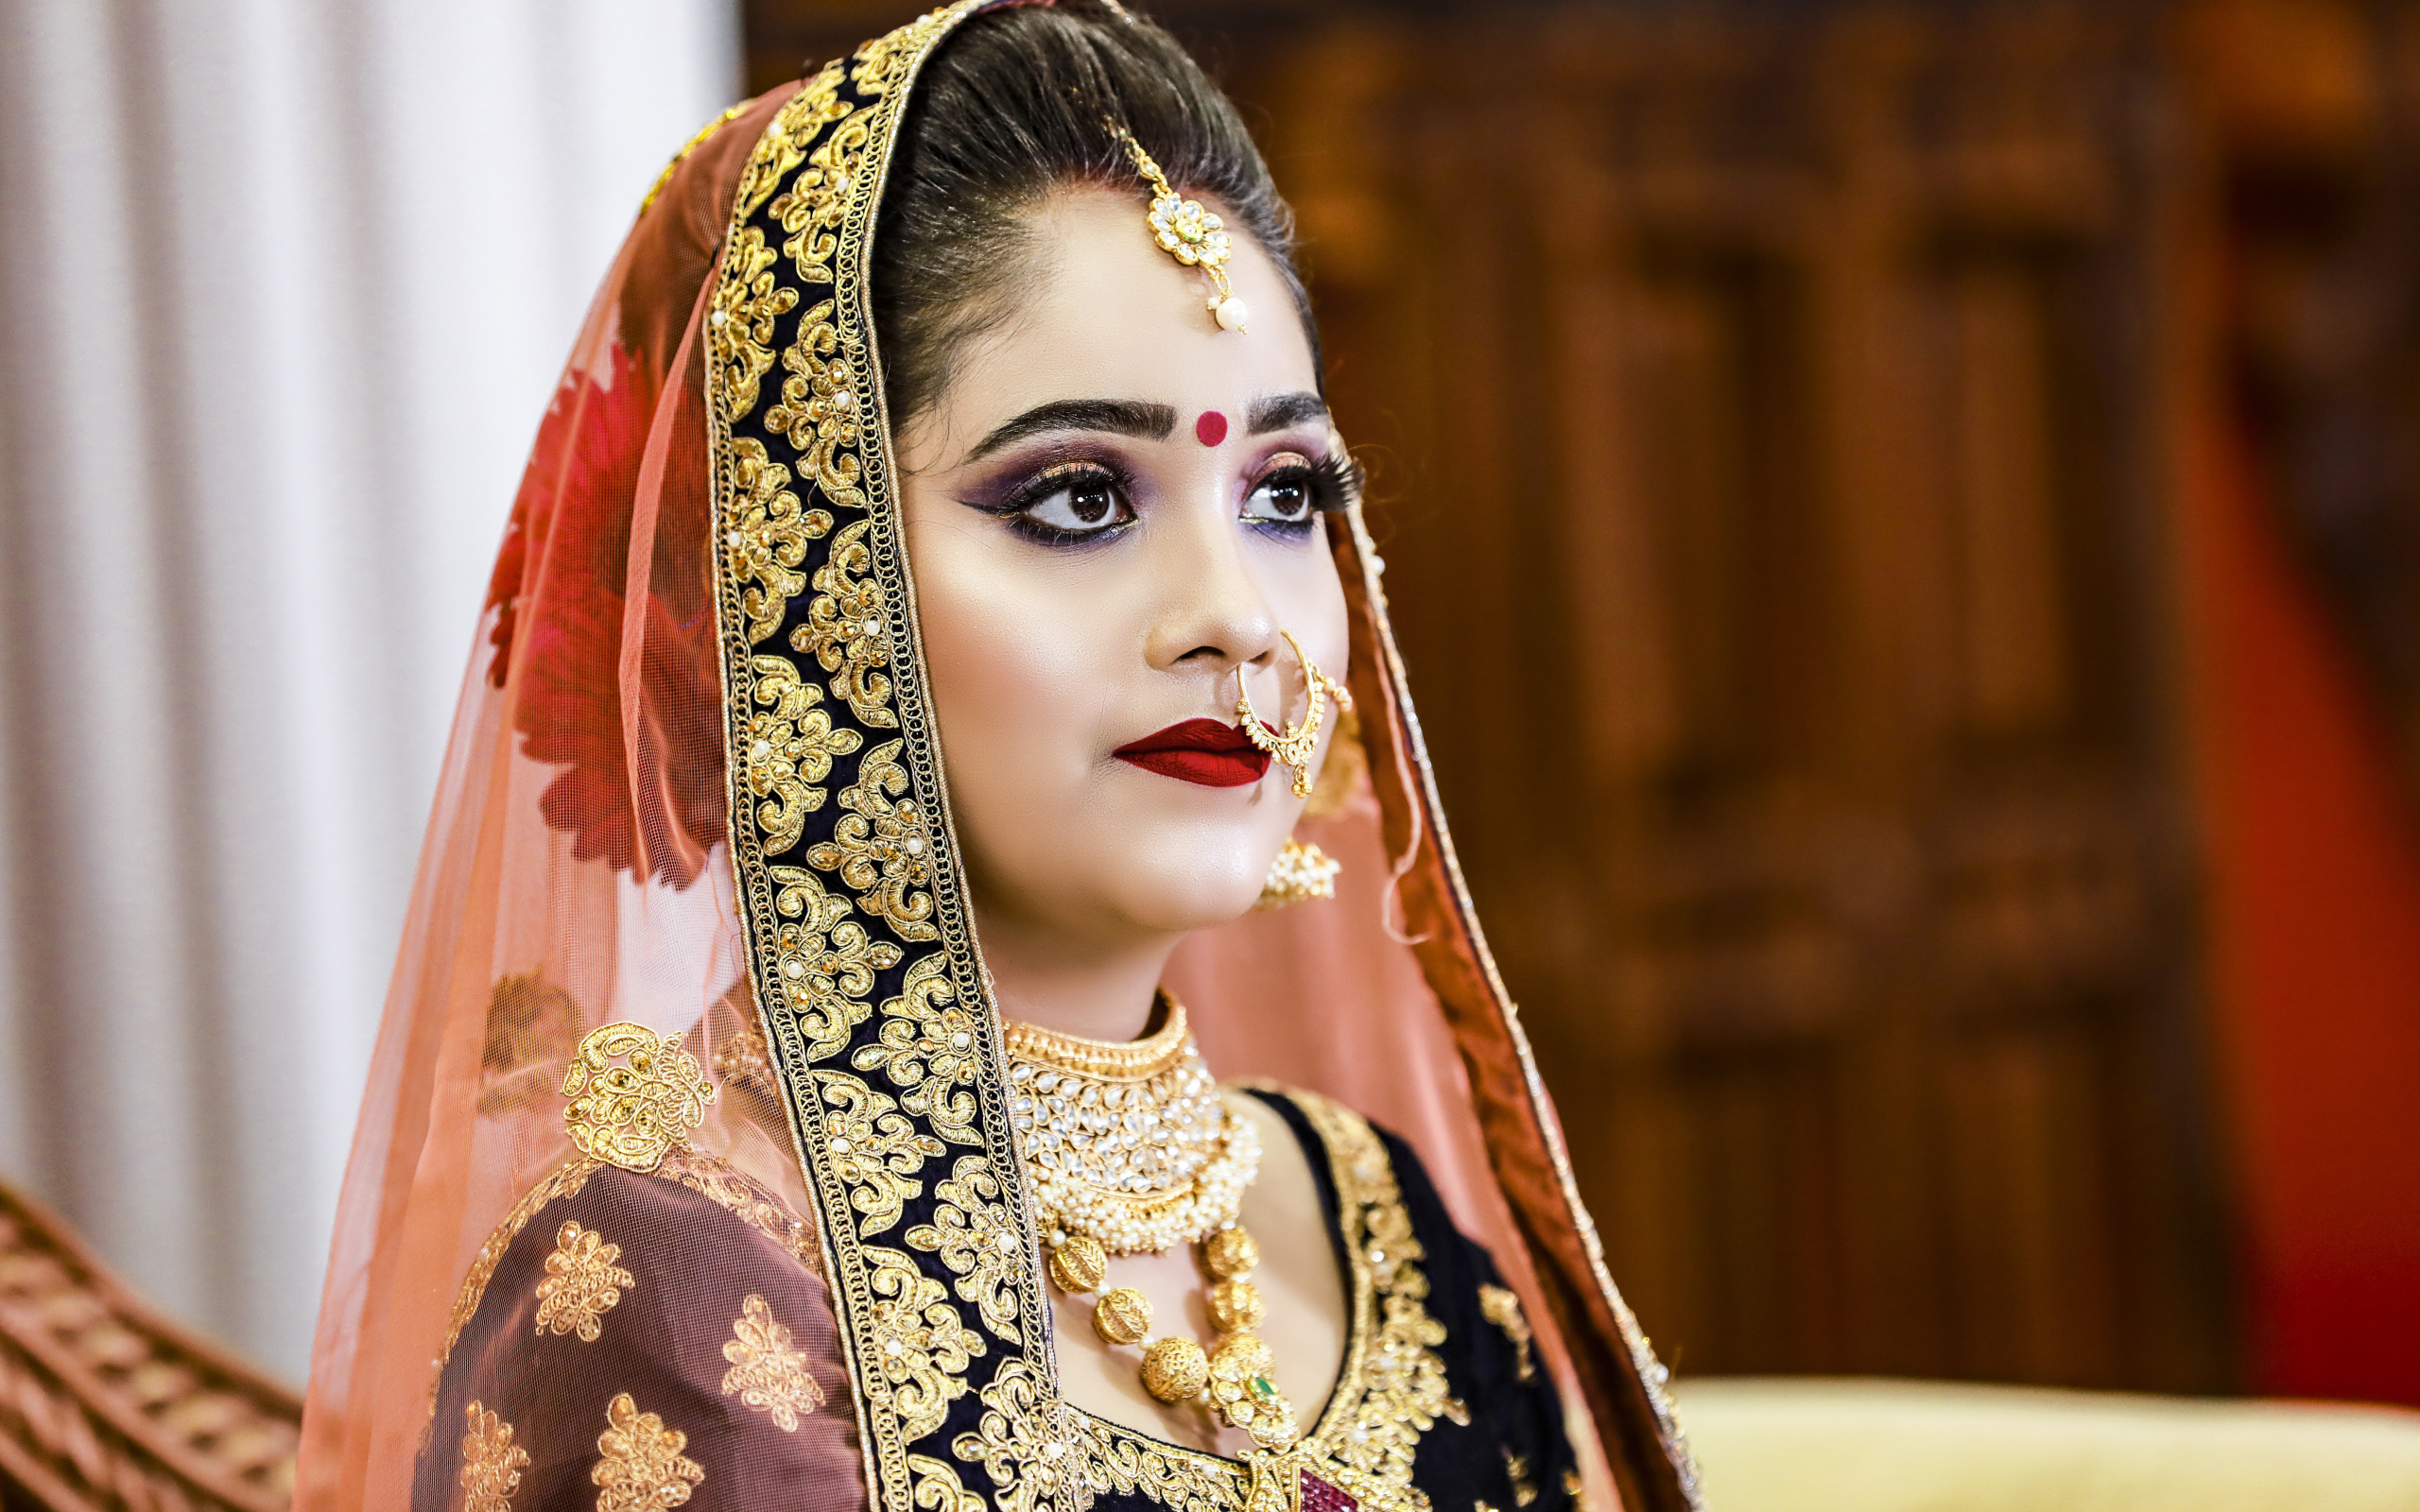 Девушка в индийском костюме невесты